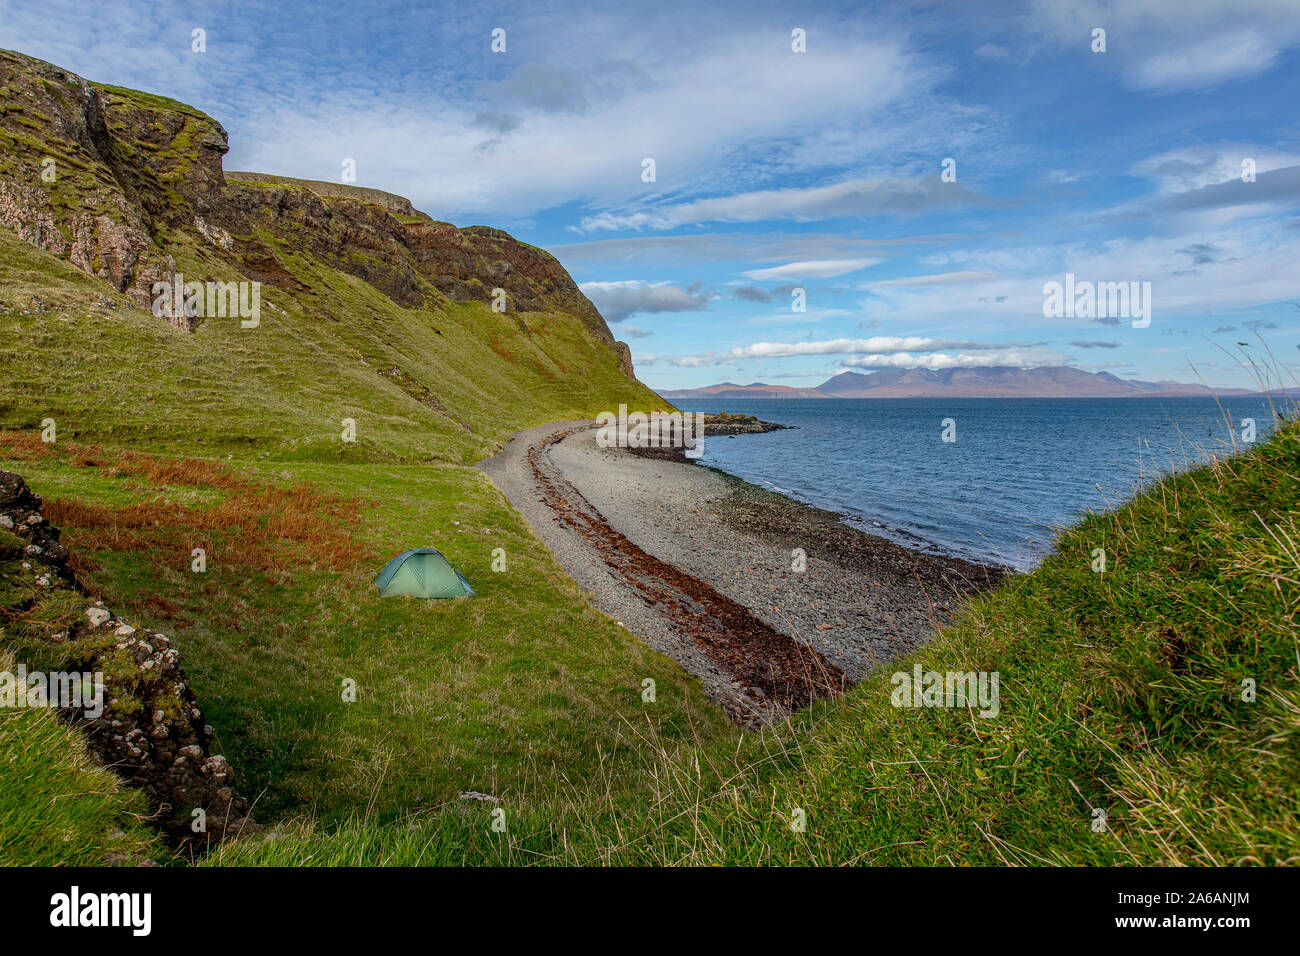 Bello e selvaggio e Camping nelle Ebridi Isola di Canna, Highland Schottland Foto Stock